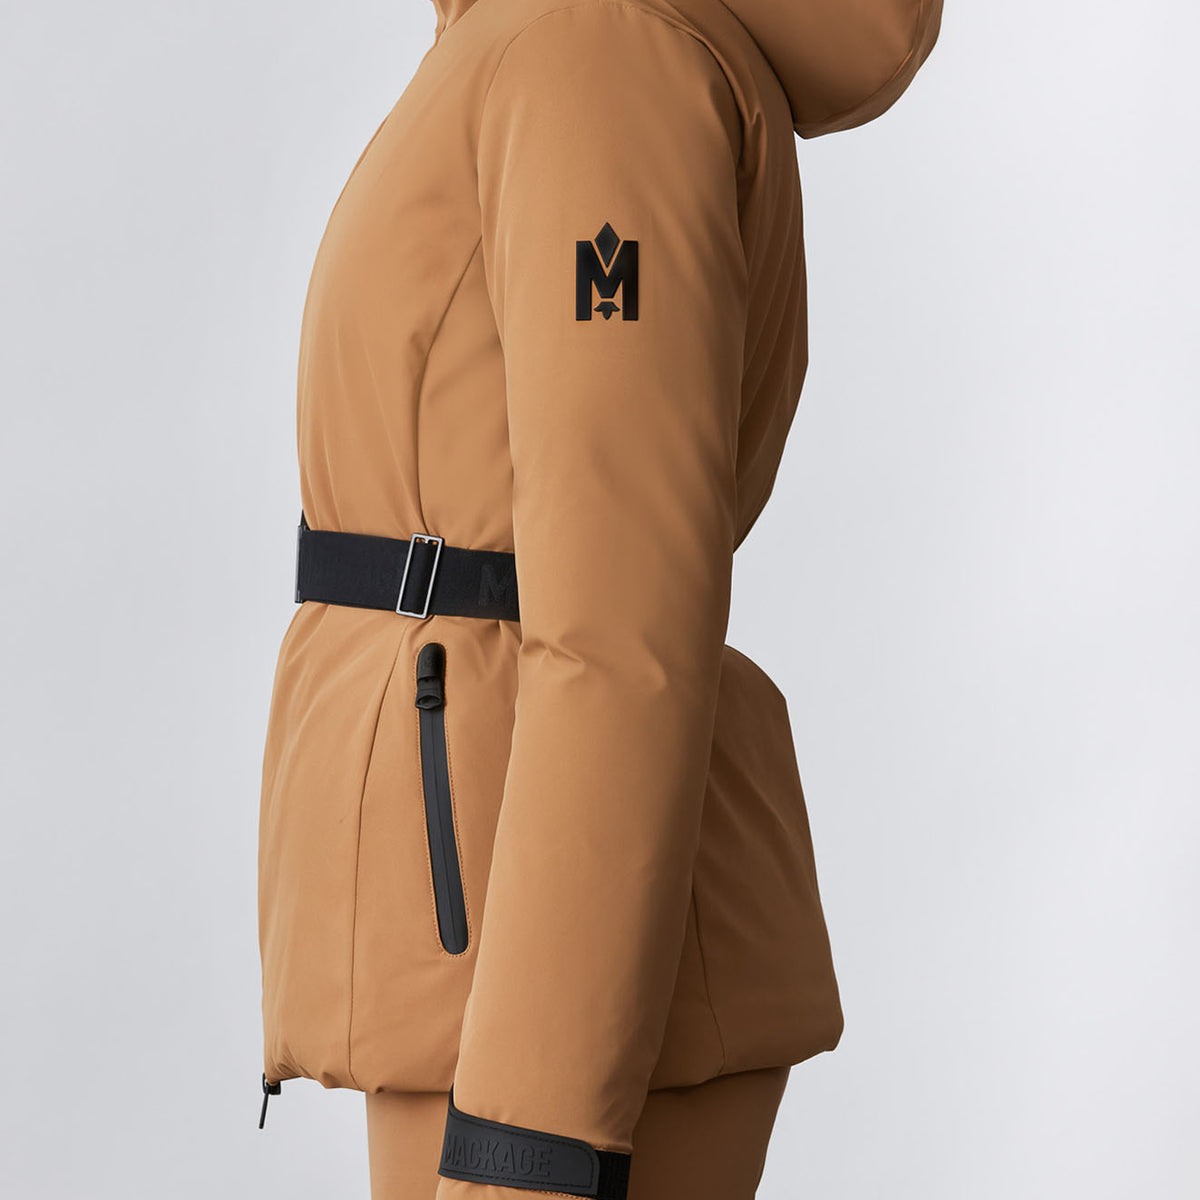 Krystal, Agile-360 belted down ski jacket with hood for ladies